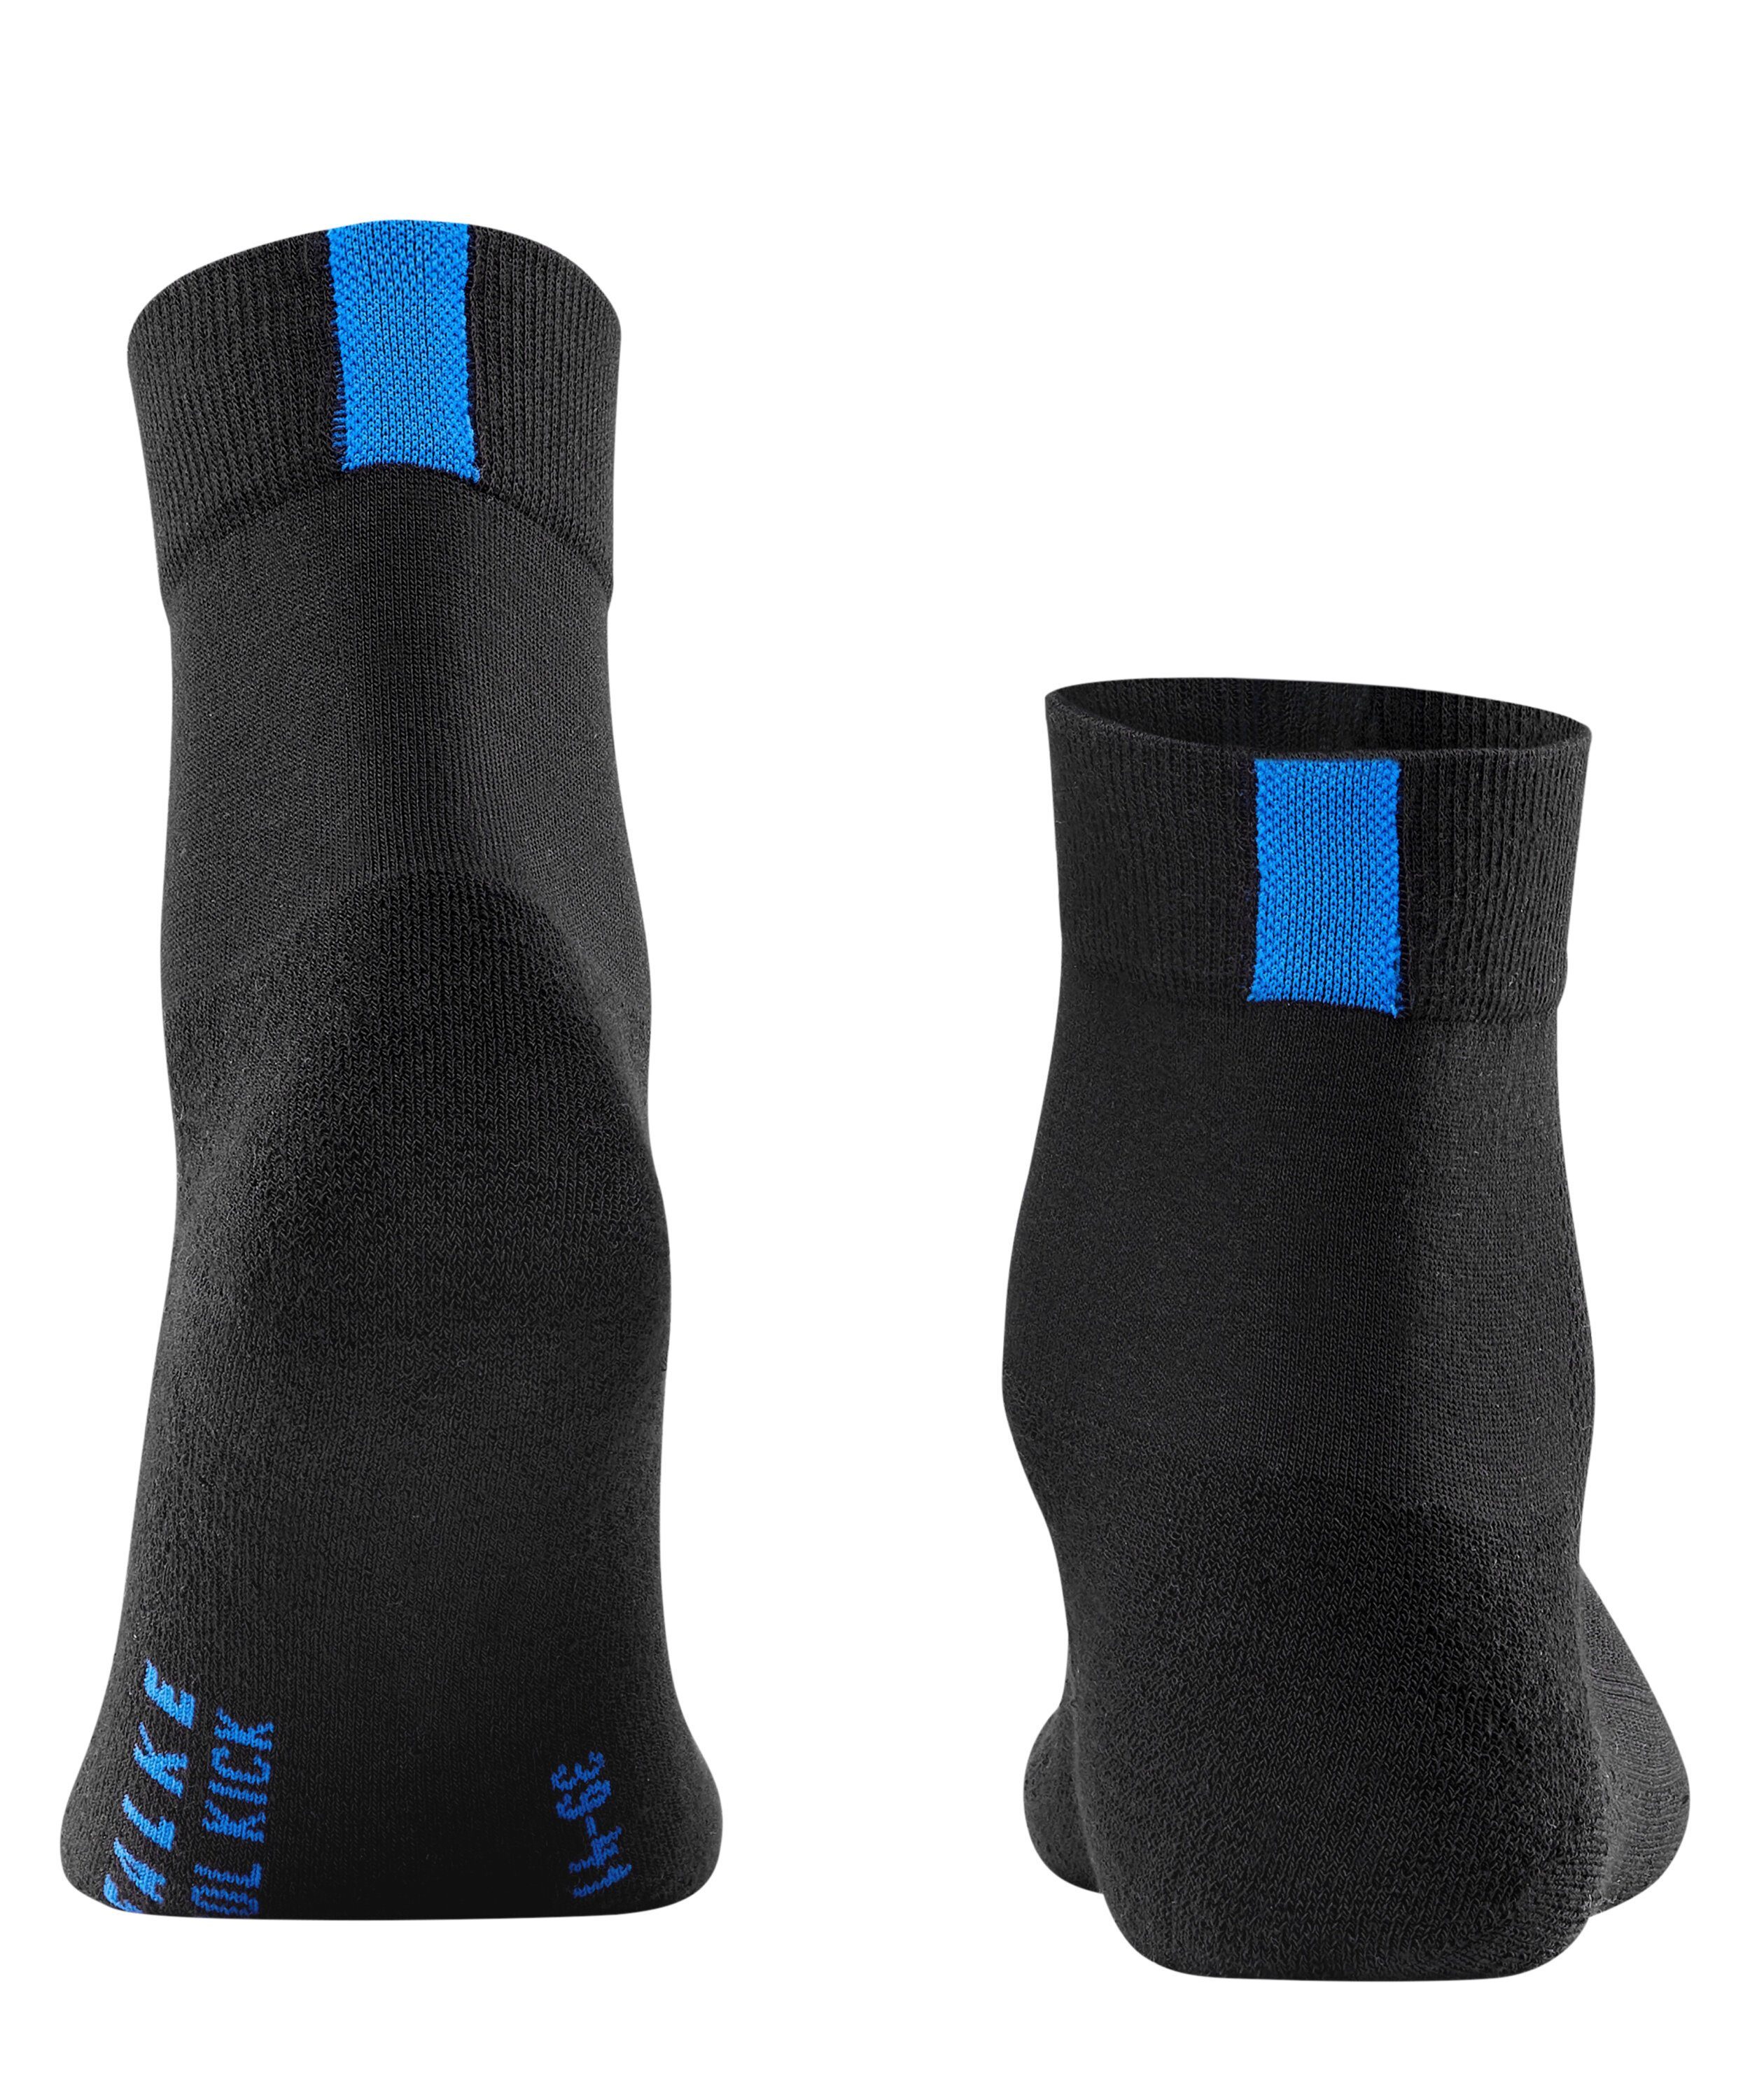 black (3000) Cool (1-Paar) Kick FALKE Socken